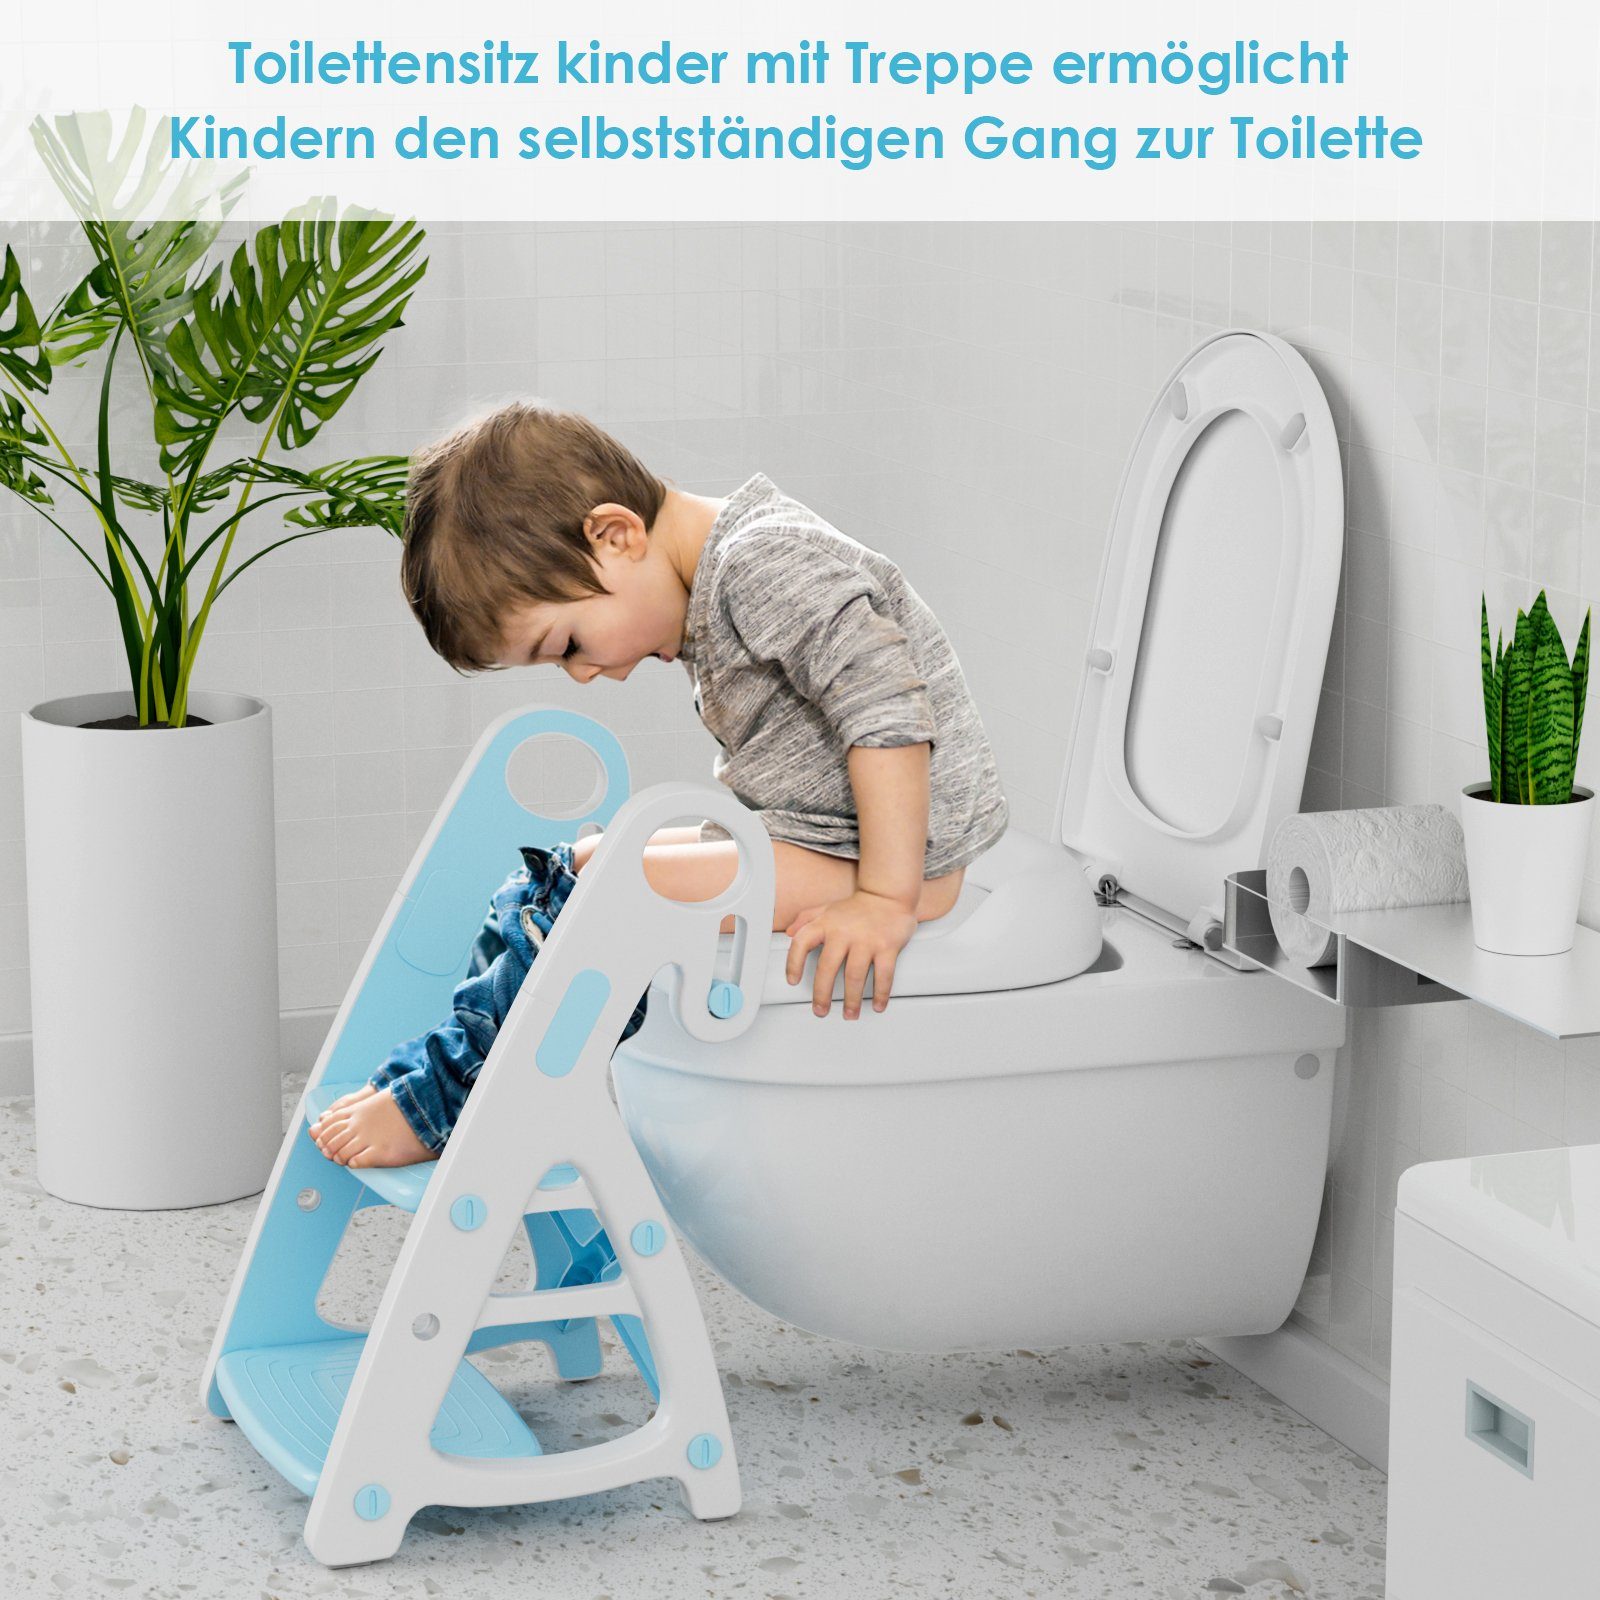 mit Baby mit Kinder Blau Toilettensitz TLGREEN in Toilettensitz 1 Treppe, 2 Tritthocker Toilettentrainer